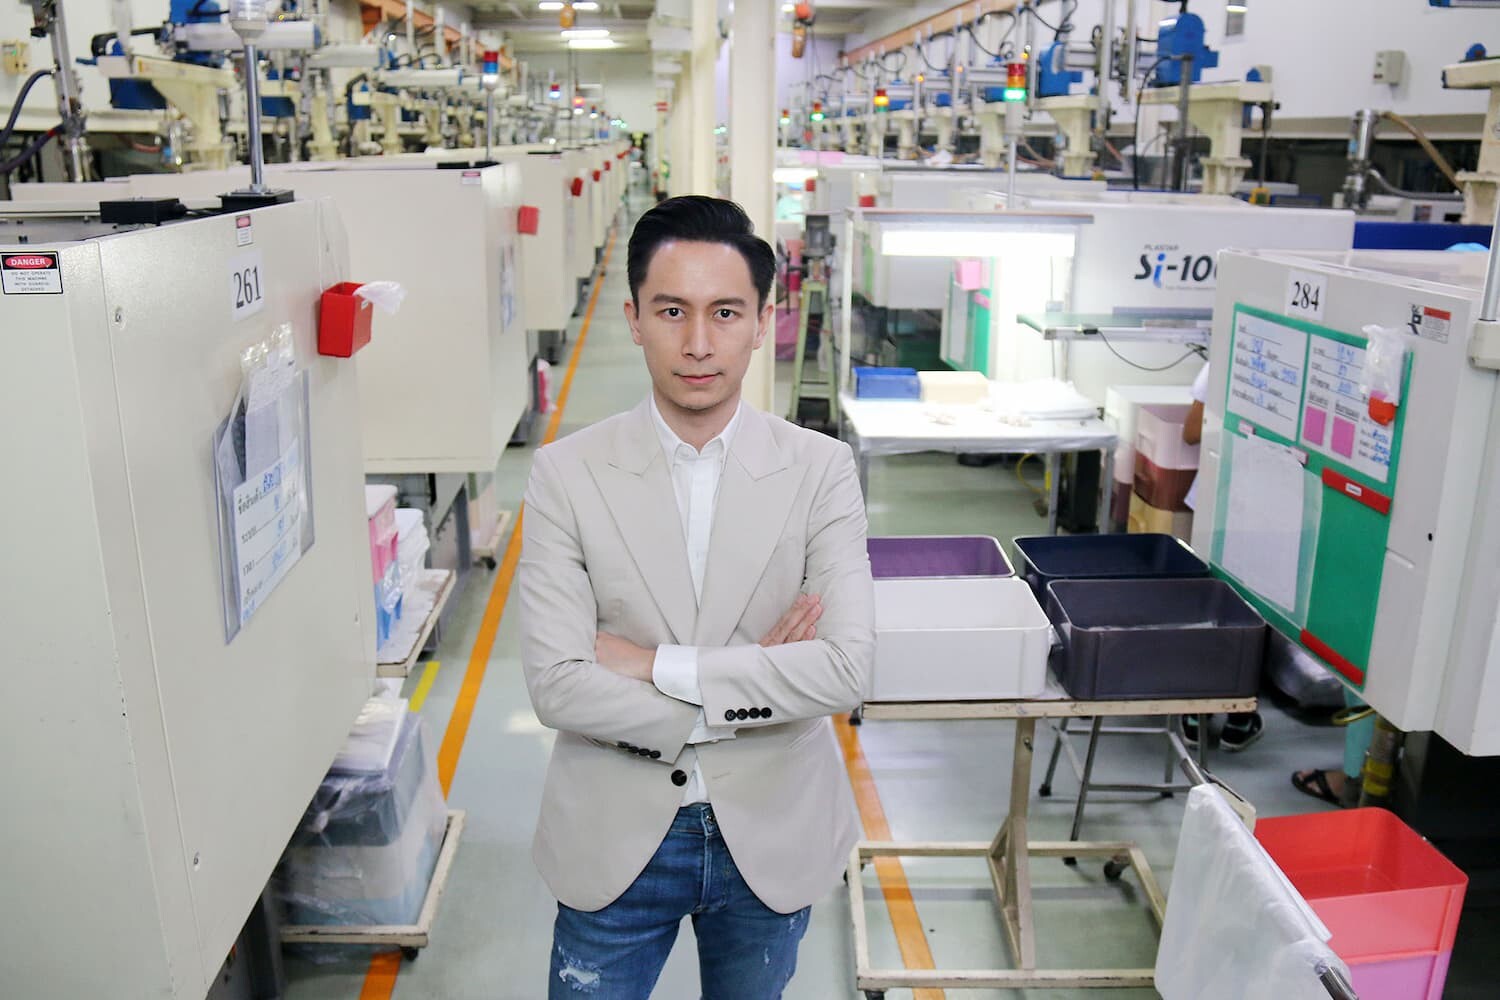 เจาะลึก "ฮูเวอร์อุตสาหกรรม" ผู้นำธุรกิจบรรจุภัณฑ์เครื่องสำอาง ปรับตัวแก้โจทย์ตลาดไทย - สร้างมาตรฐานแข่งขันตลาดโลก